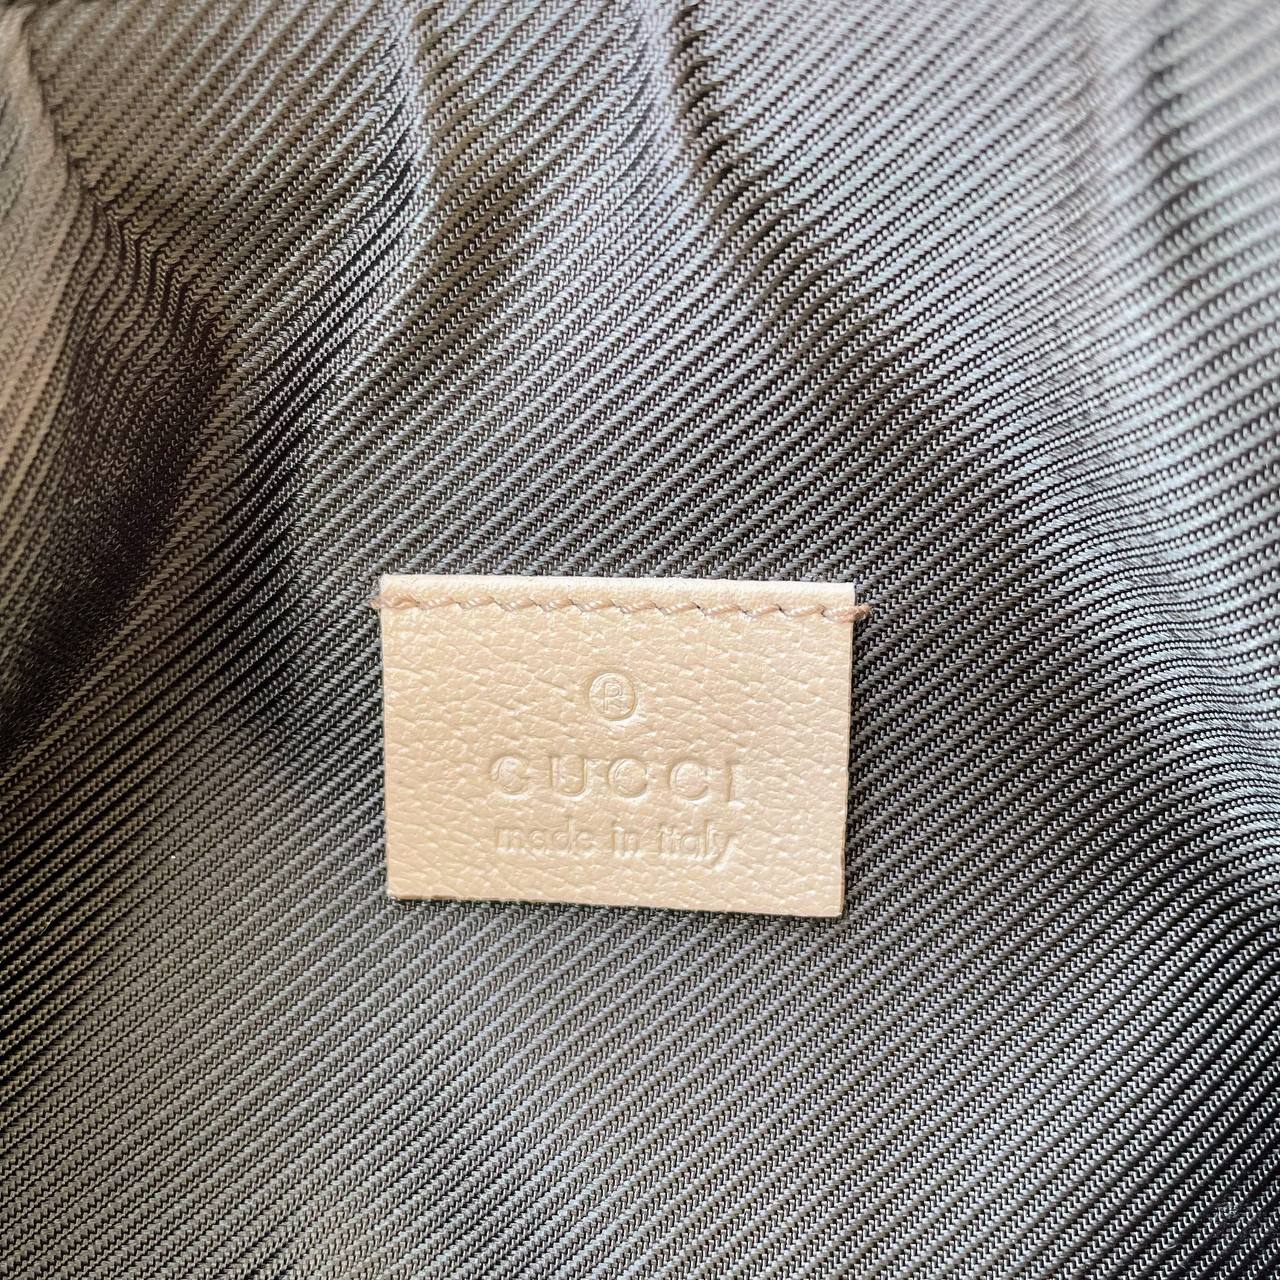 【 In-Stock 】Old Gucci Shoulder Bag - Cnjpkitchen ❤️ 🇯🇵日本廚具 家居生活雜貨店